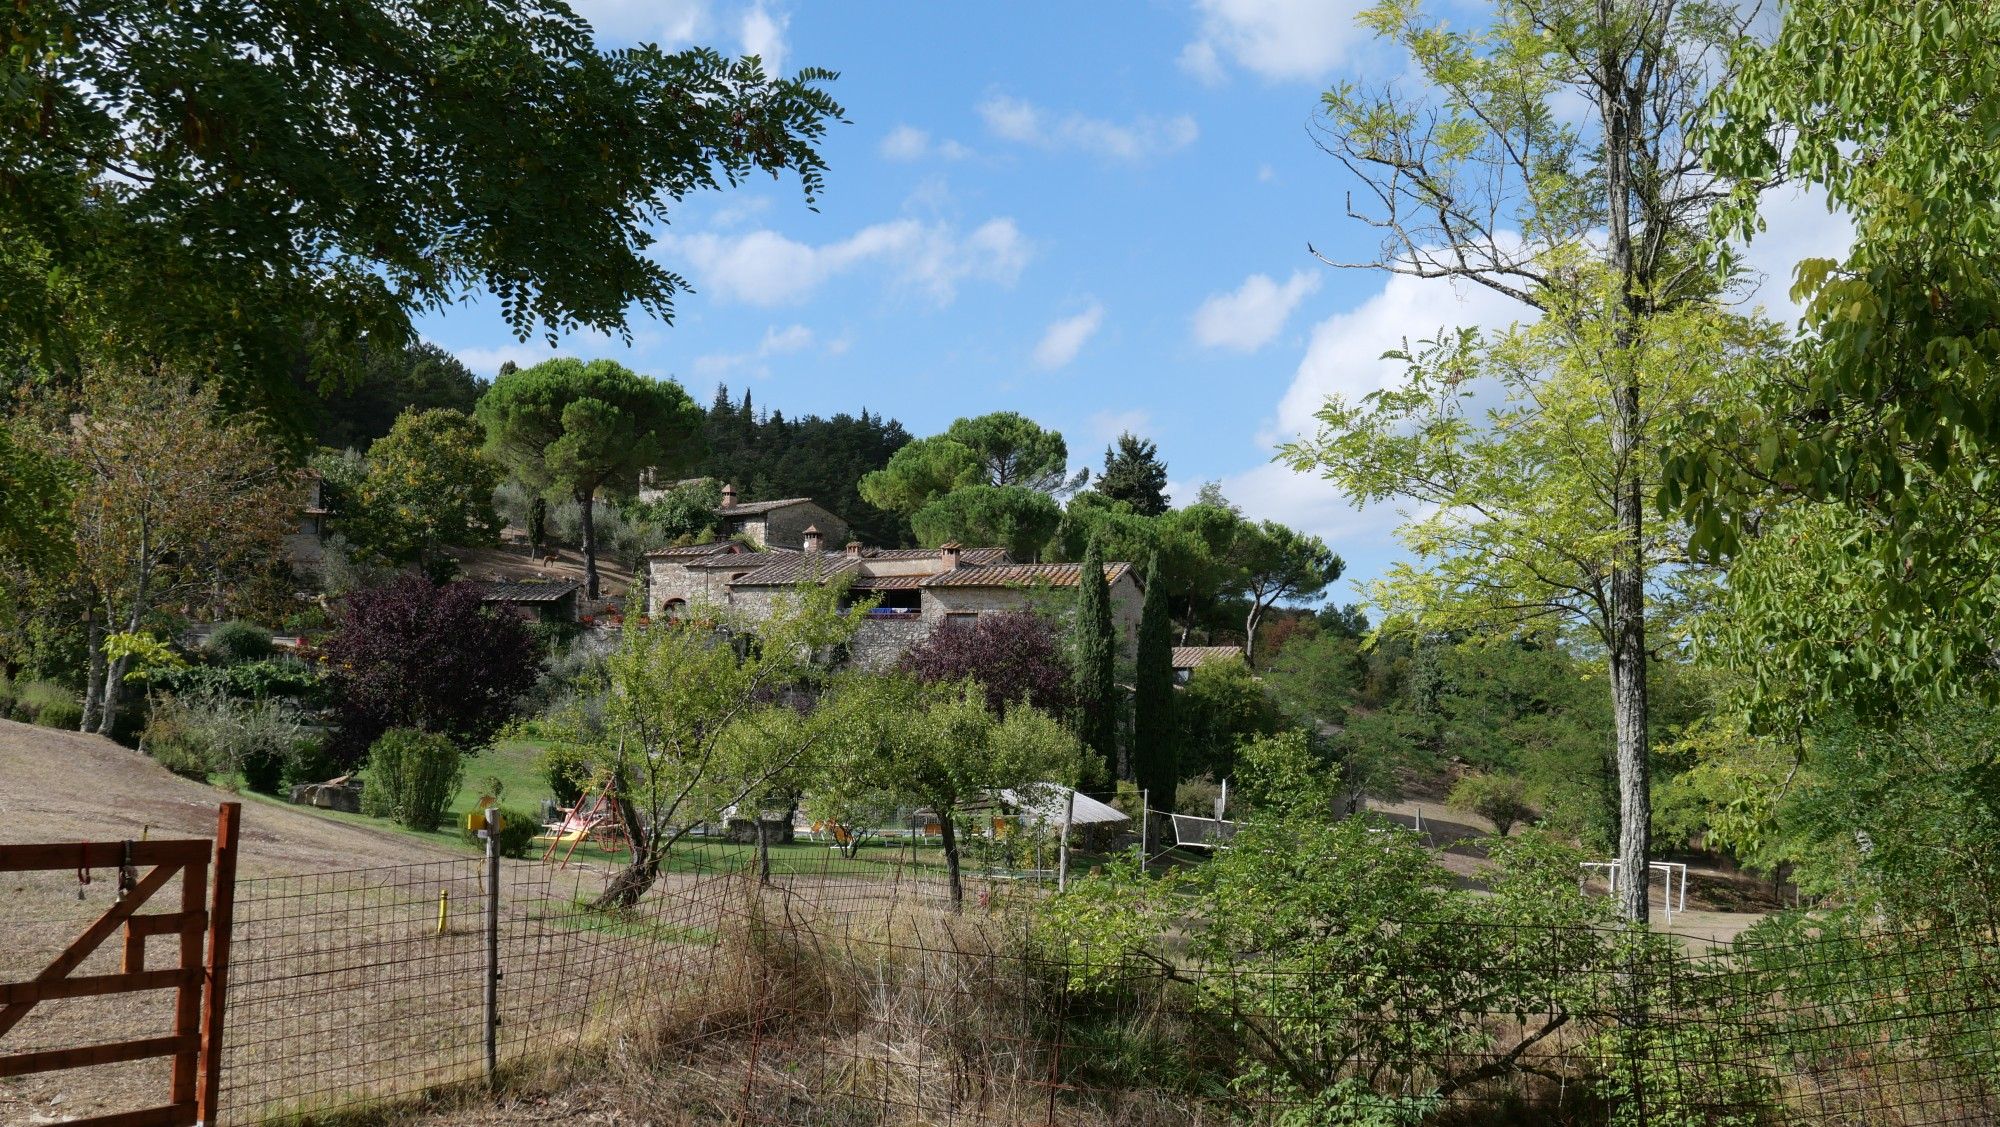 Poderi Val Verde, el resort arquero de la Toscana